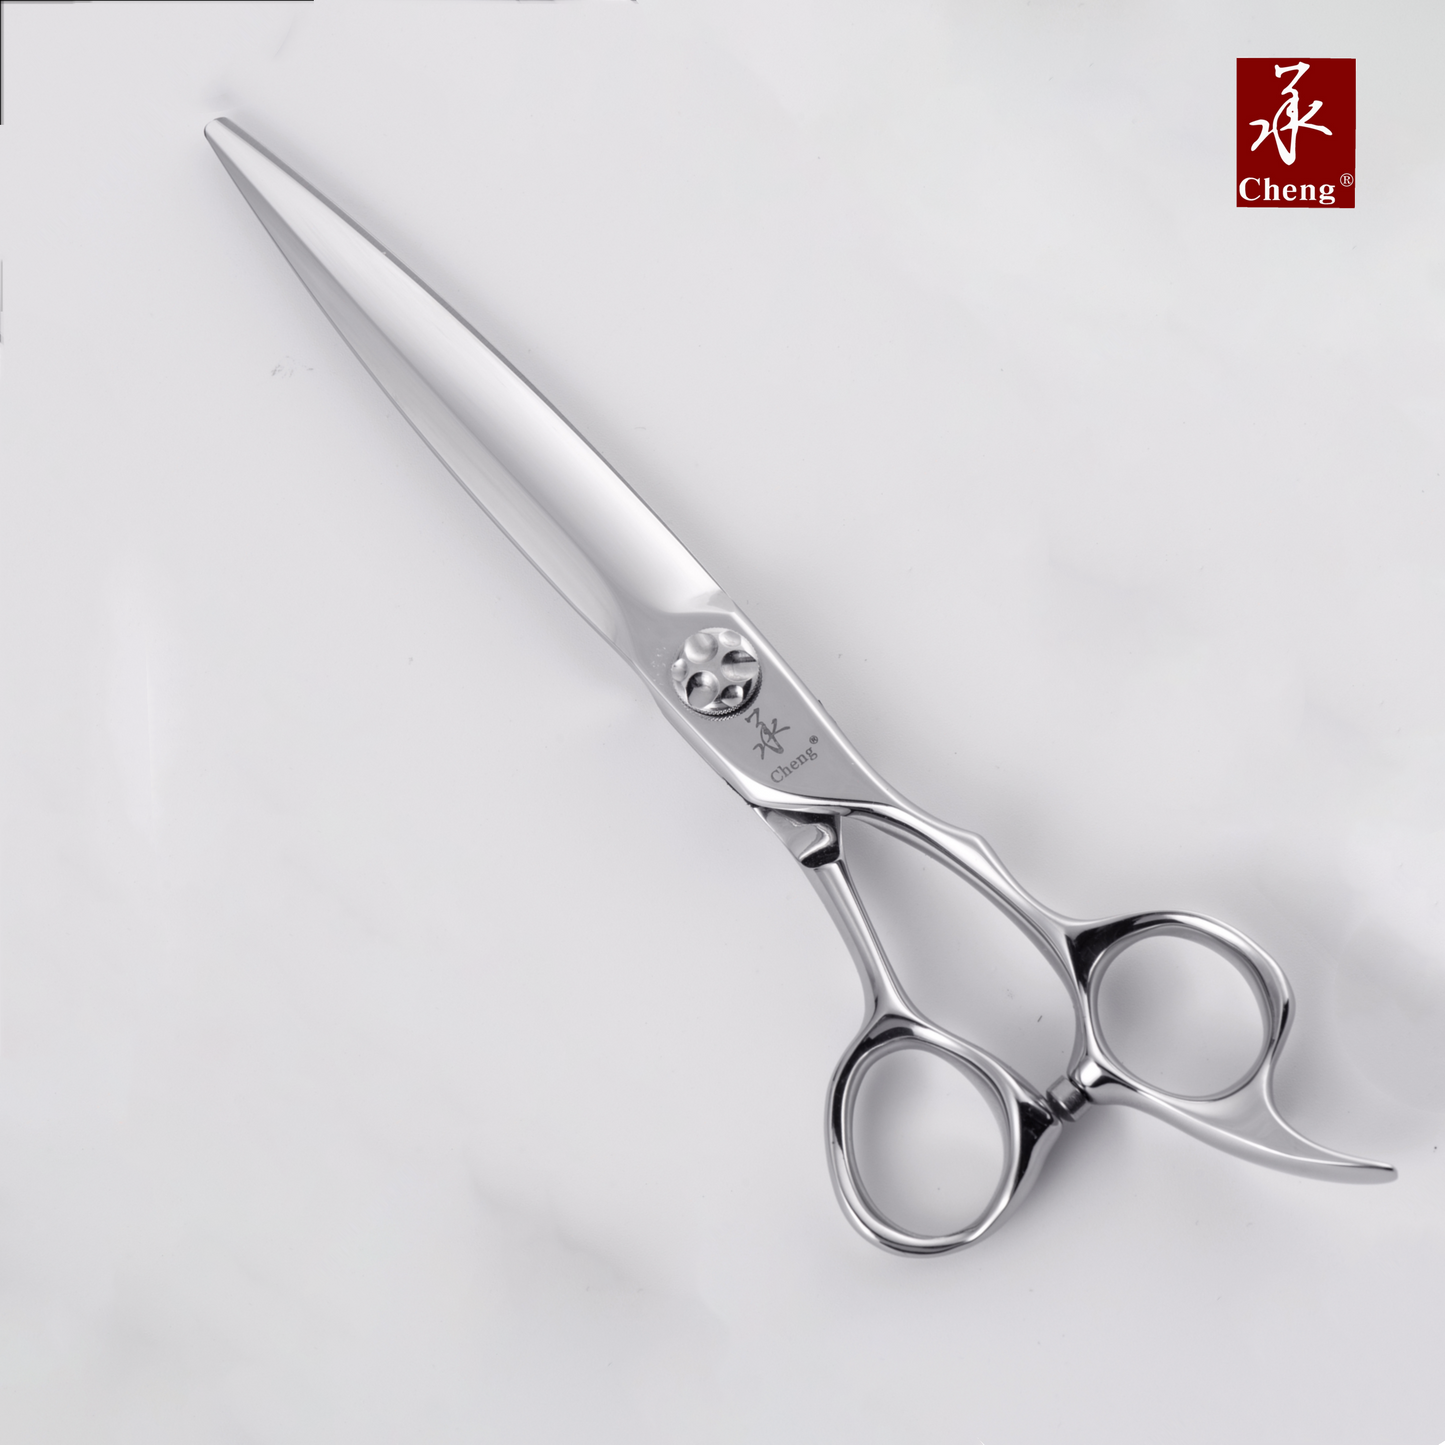 VD-70KR DLC Hair Cutting Scissors 7.0 Inch